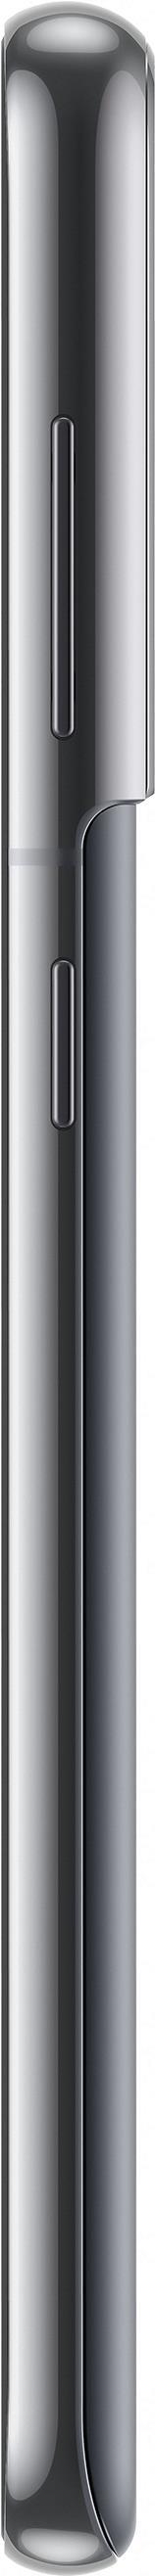 Samsung Galaxy S21 5G SM-G991B 15,8 cm (6.2" ) Dual-SIM Android 11 USB Typ-C 8 GB 128 GB 4000 mAh Grau (SM-G991BZADEEB)